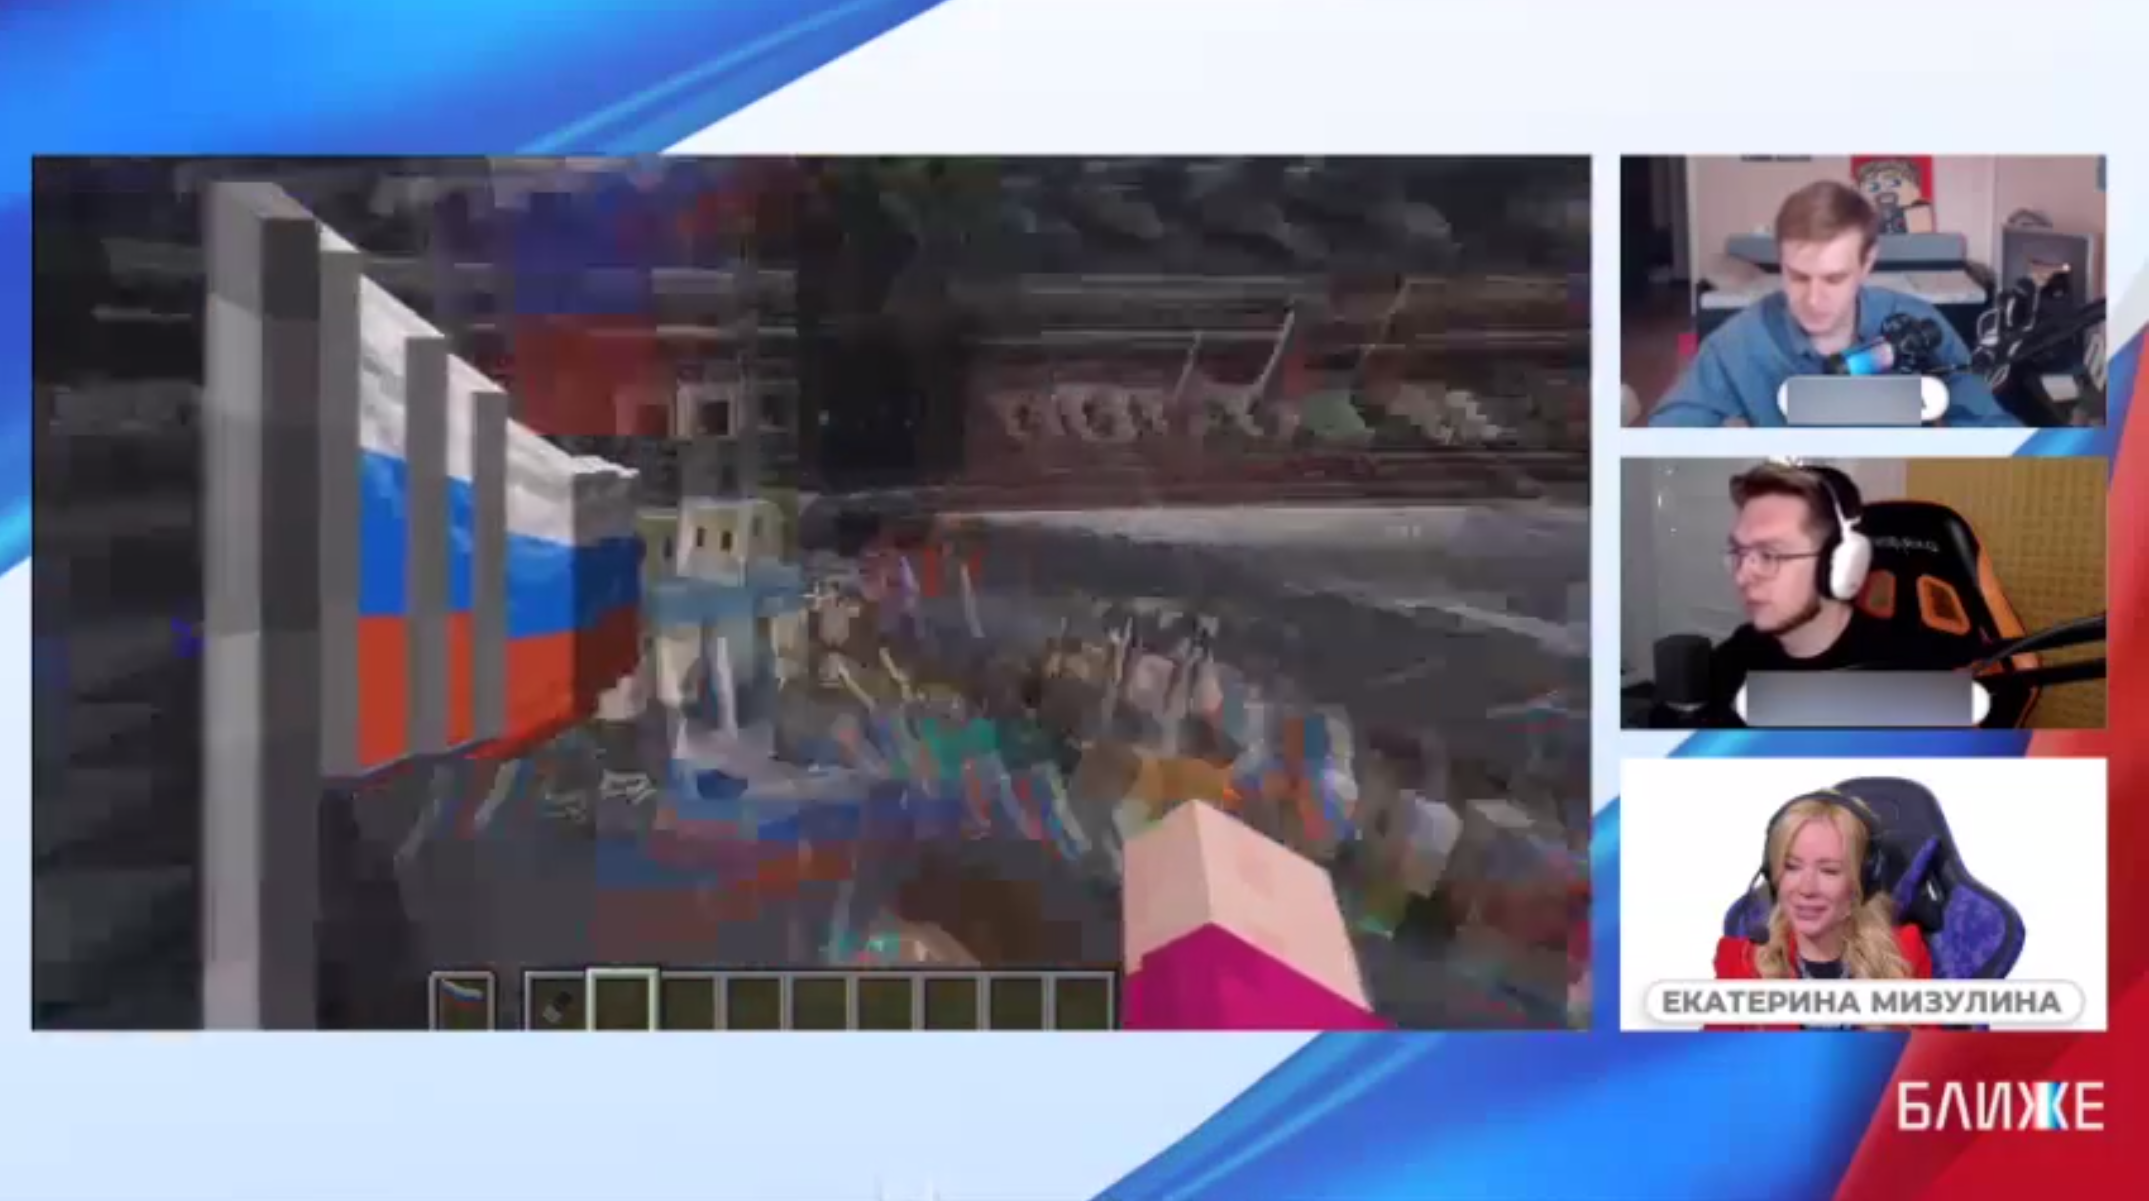 Стрим Екатерины Мизулиной Дня России в Minecraft. Скриншот трансляции